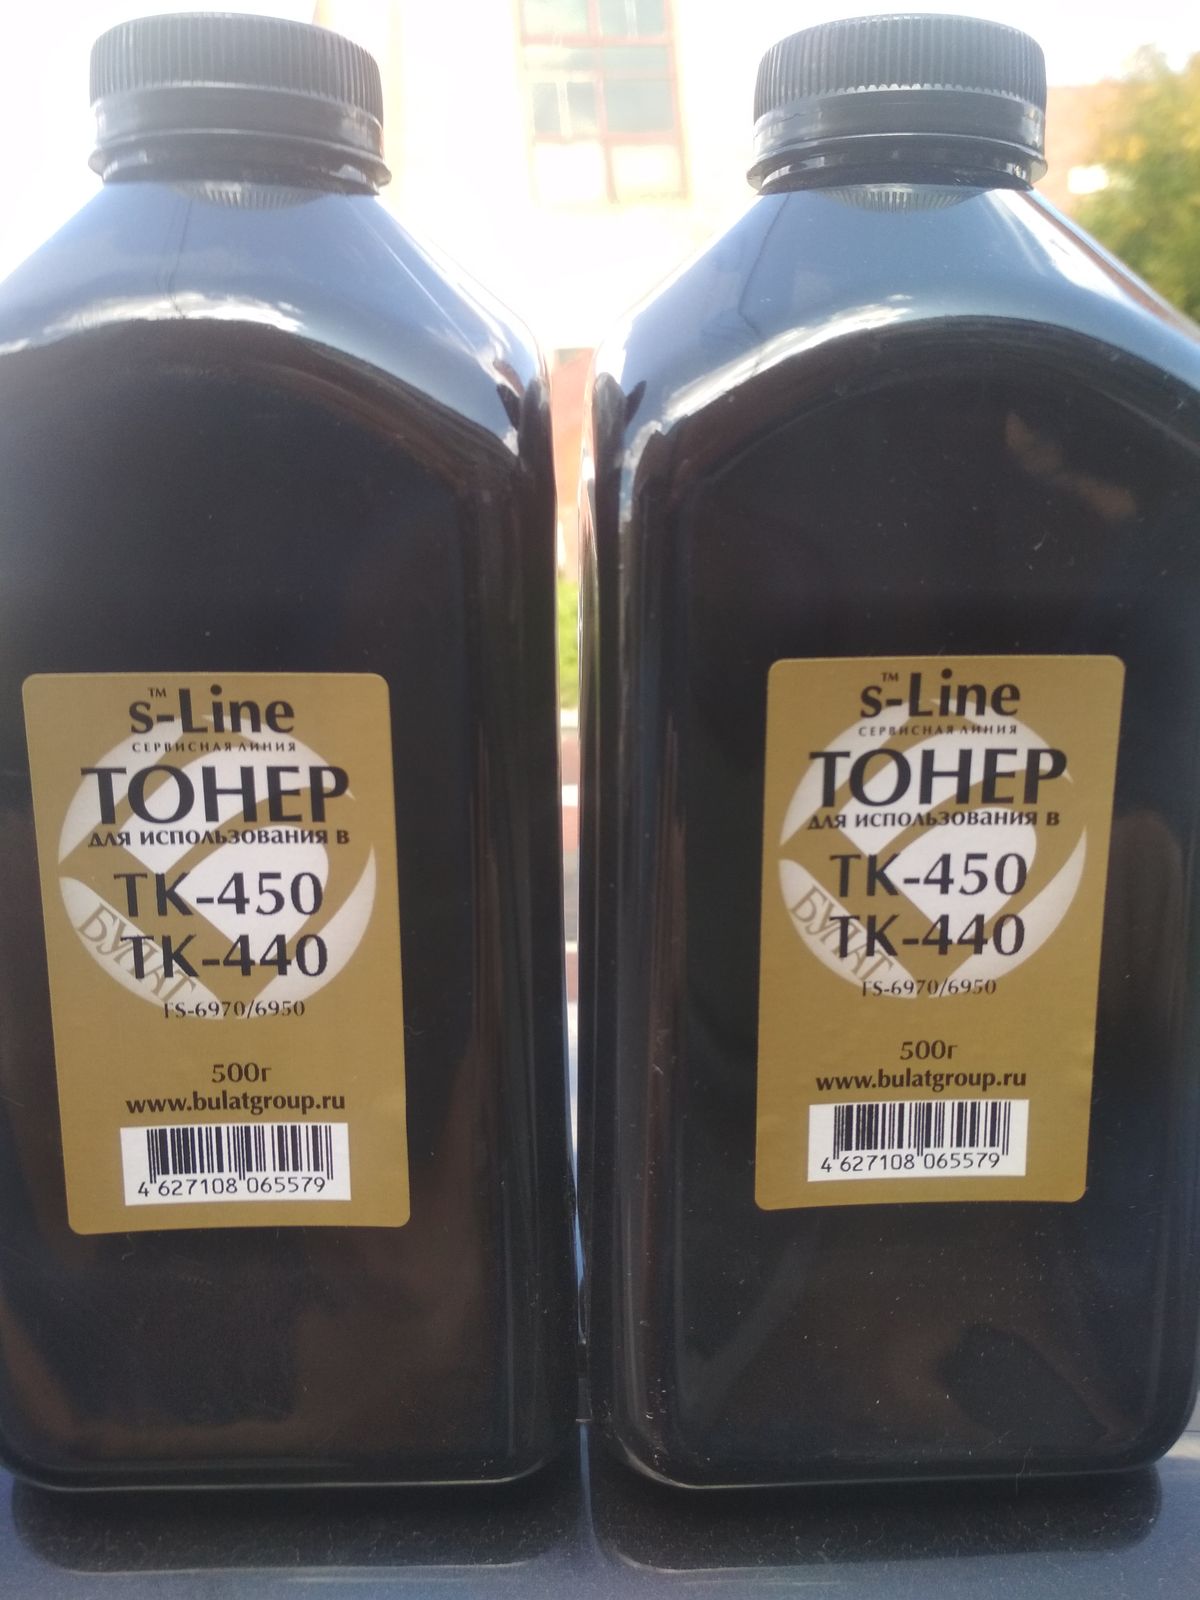 Тонер-картридж Brother HL-4150 TN325 Cyan (3.5k) 7Q